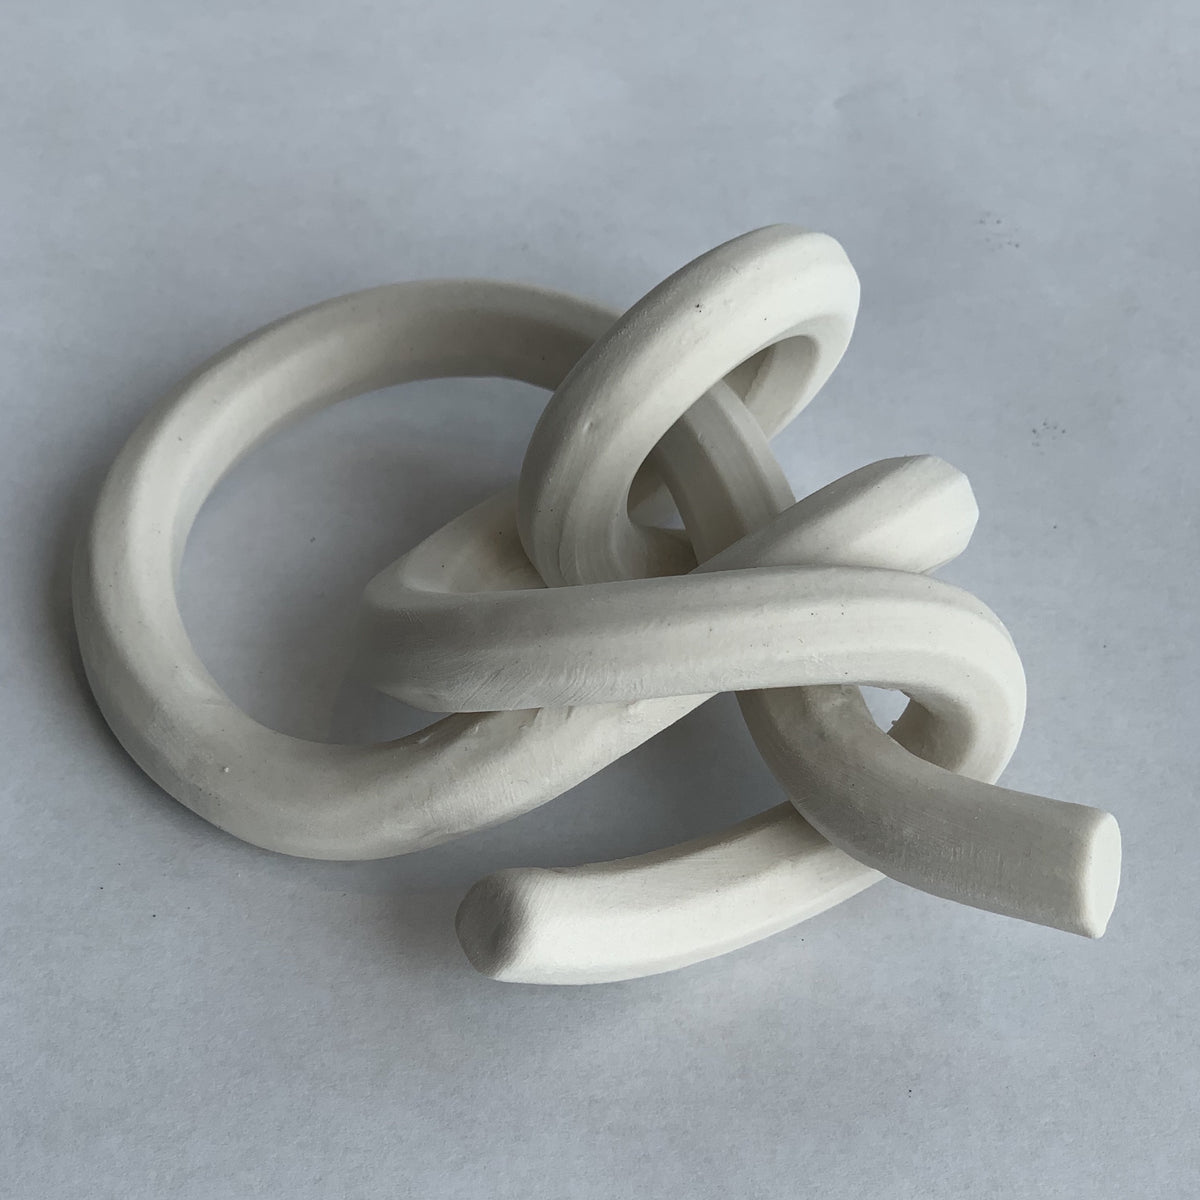 Porcelain Knot: Midshipman's Hitch – Purely Porcelain